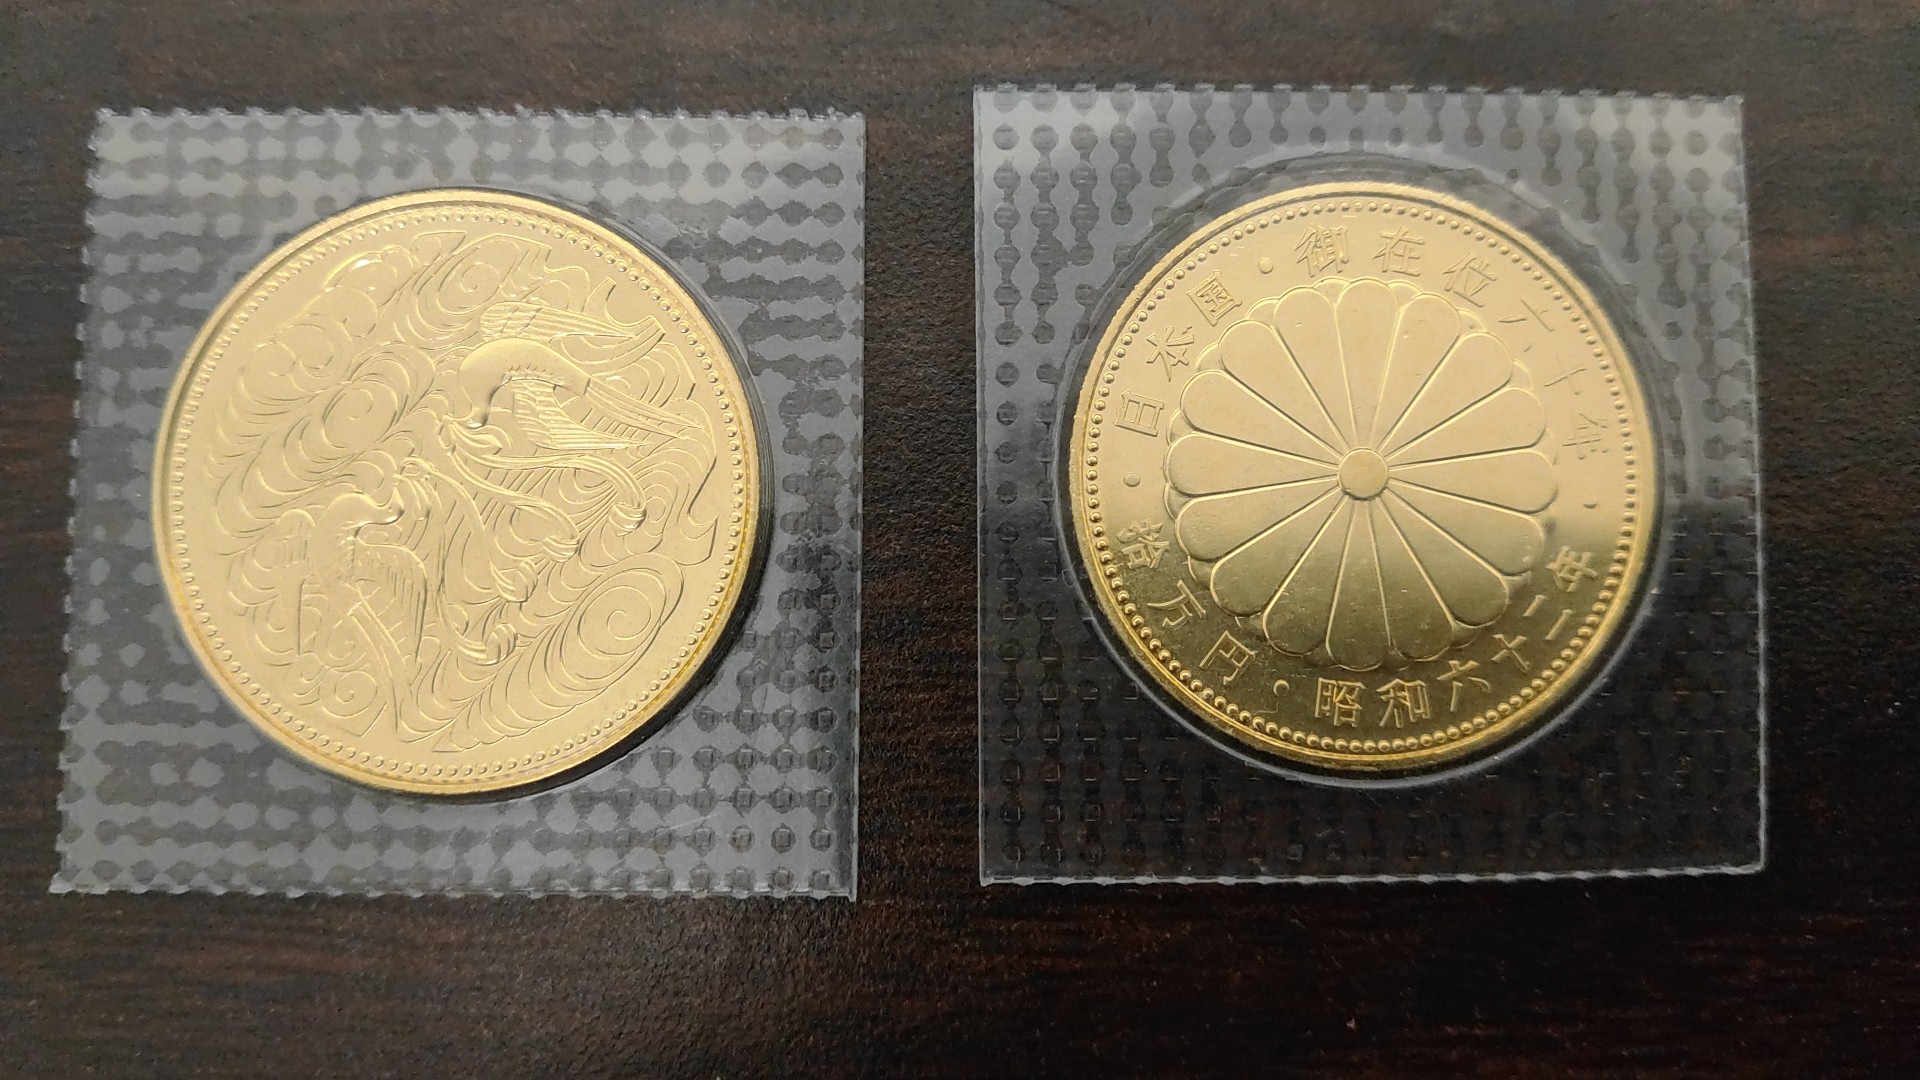 天皇陛下御在位 60年記念 昭和61年 純金 銀貨 10万円金貨 プルーフ硬貨